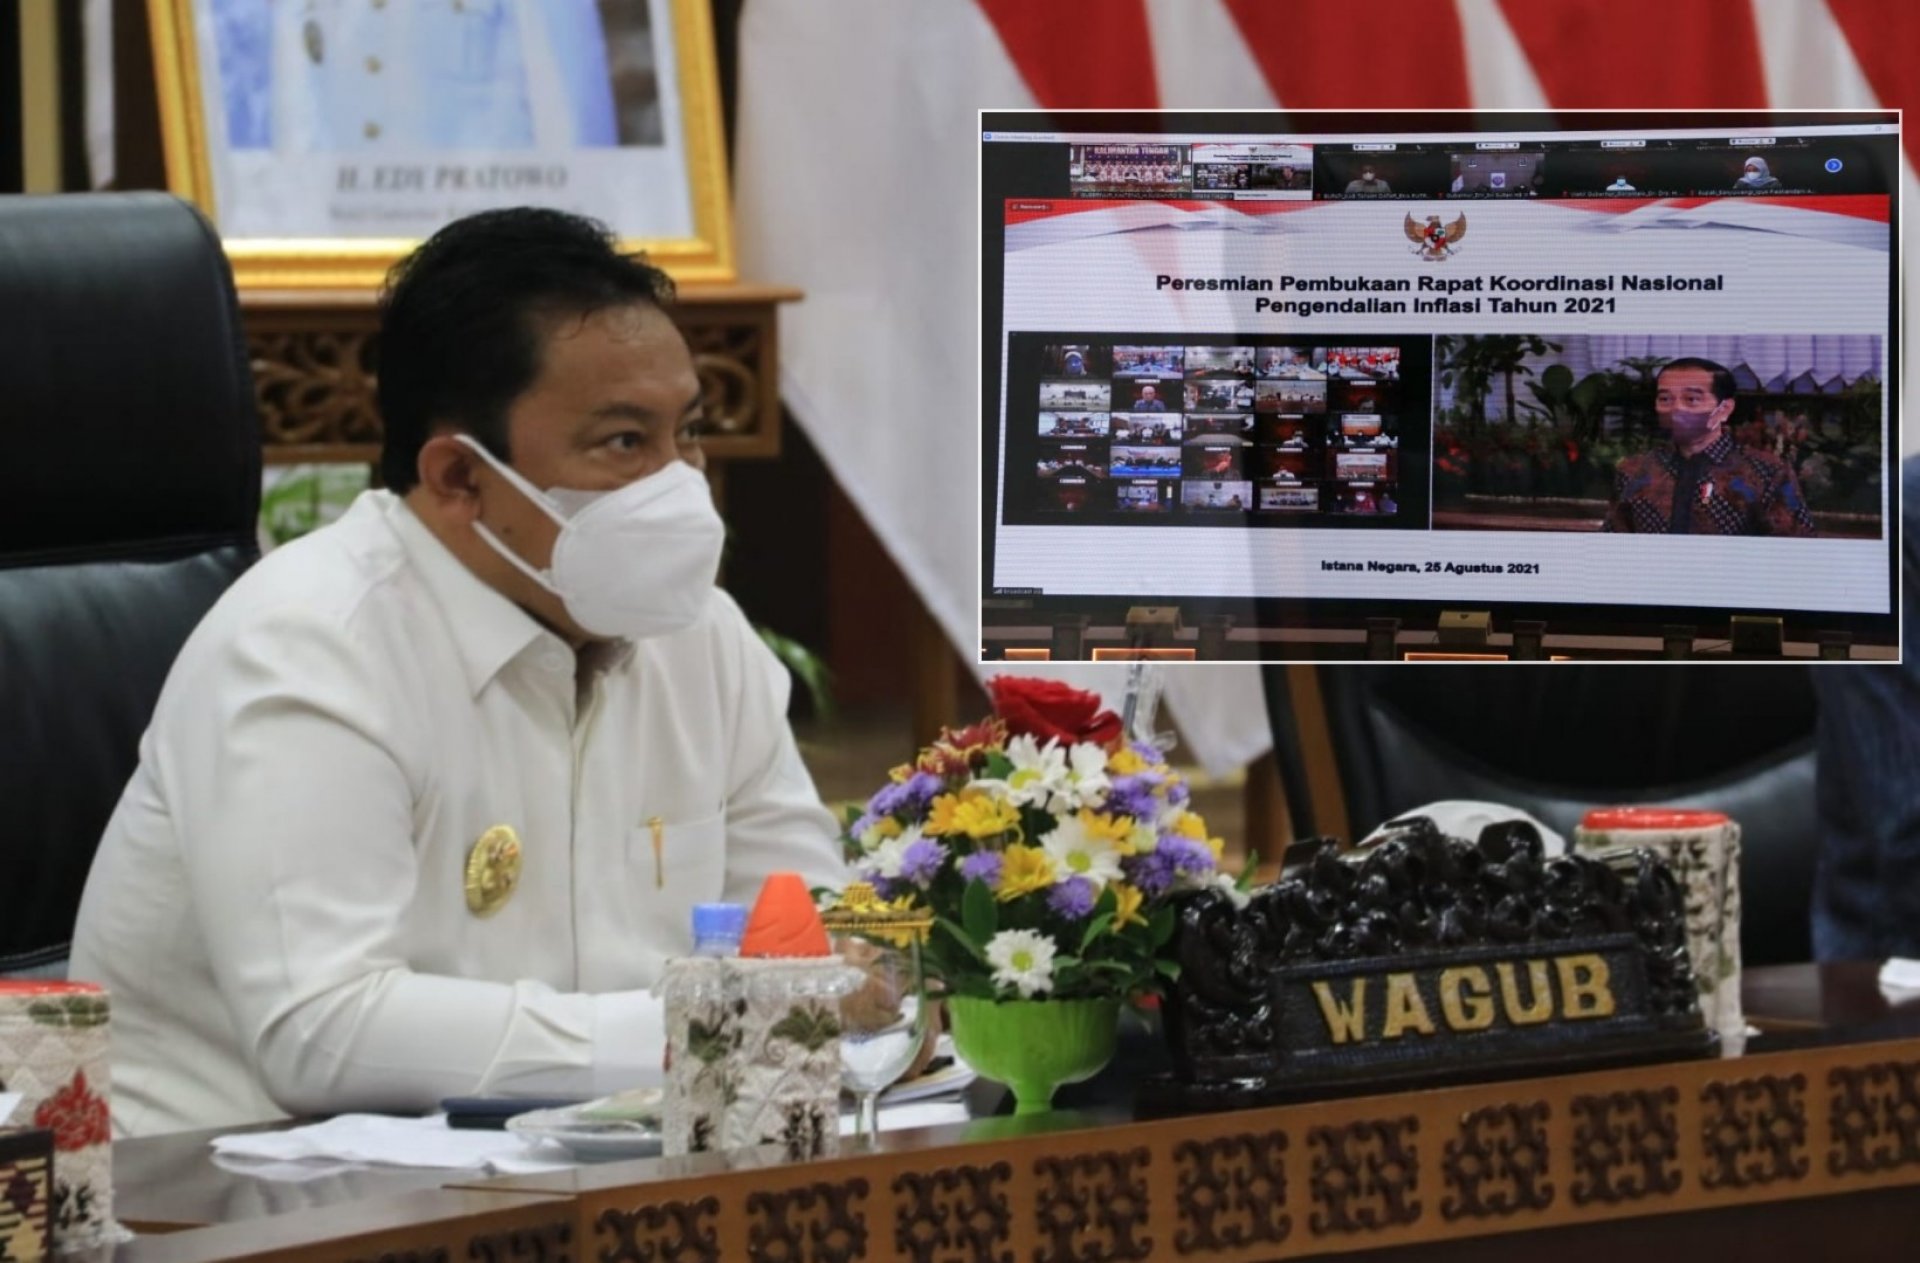 Wagub Kalteng Hadiri Pembukaan Rakornas Pengendalian Inflasi Tahun 2021 Via Konferensi Video